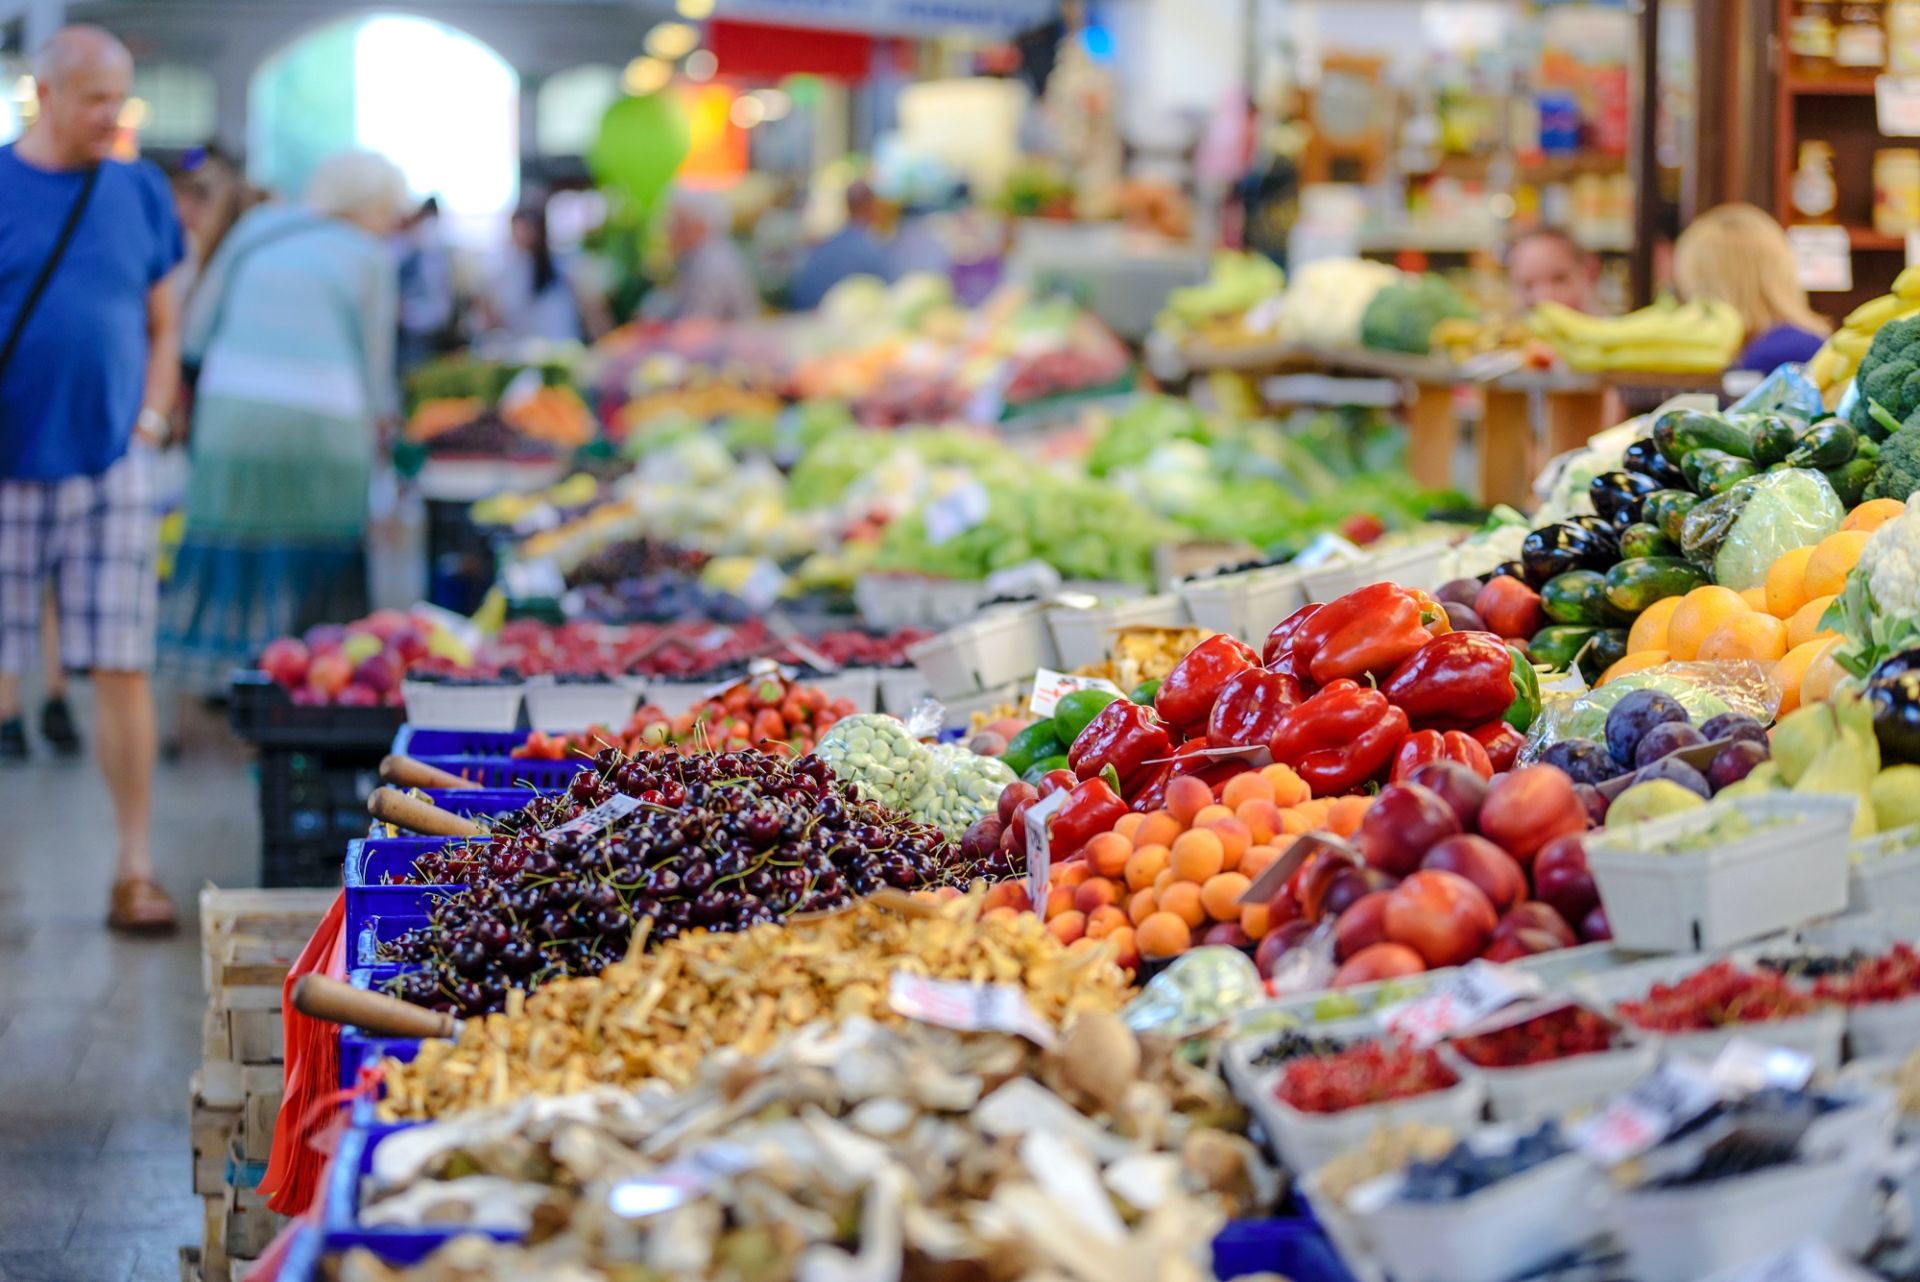 Trong danh sách có 16 doanh nghiệp xuất khẩu rau-củ-quả và các sản phẩm từ rau-củ-quả